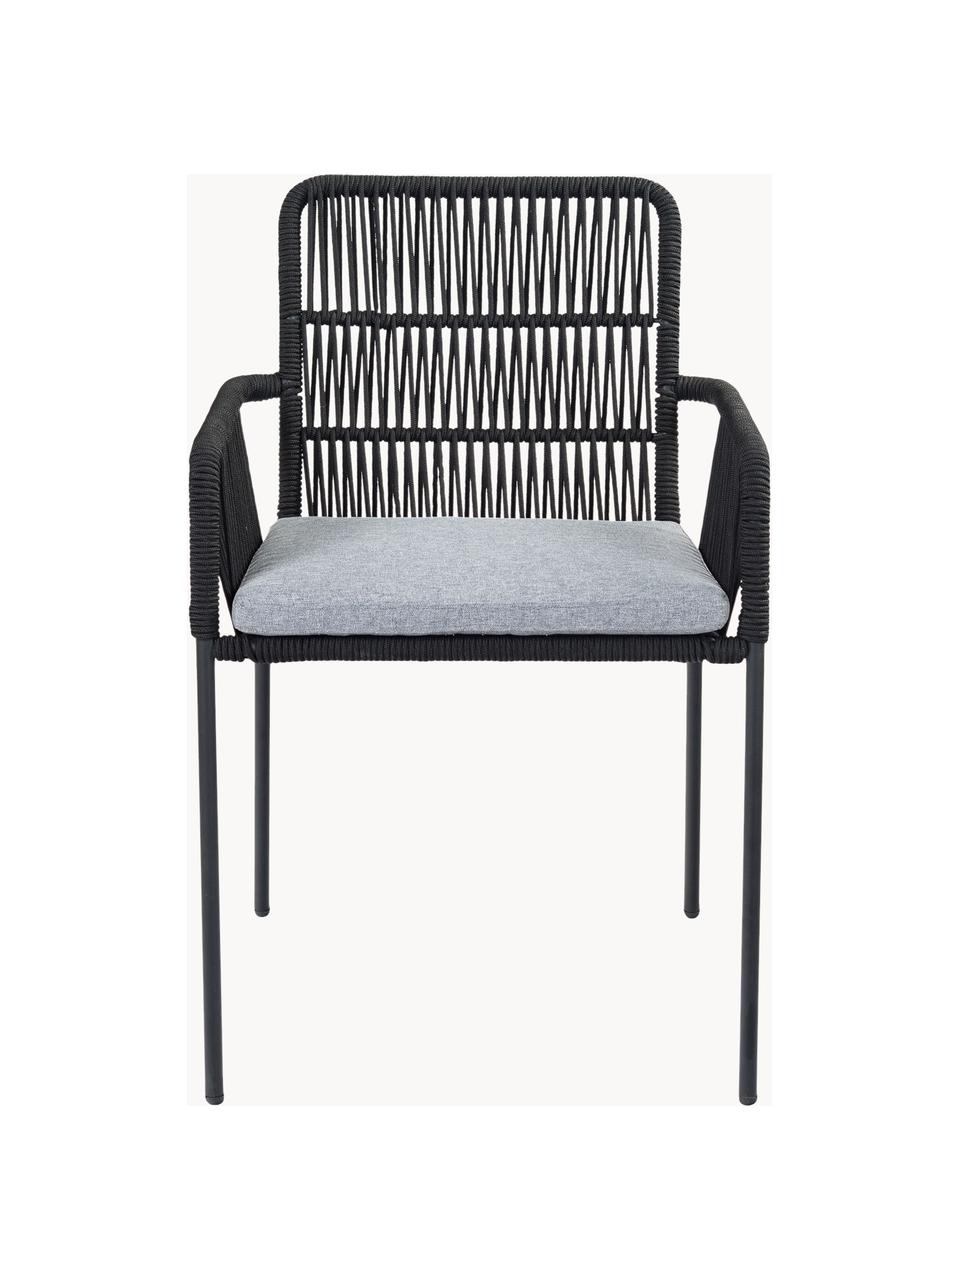 Armstoelen Sando met zitkussen, 2 stuks, Zitvlak: polyethyleen vlechtwerk, Frame: gepoedercoat metaal, Geweven stof grijs, zwart, B 55 x D 65 cm